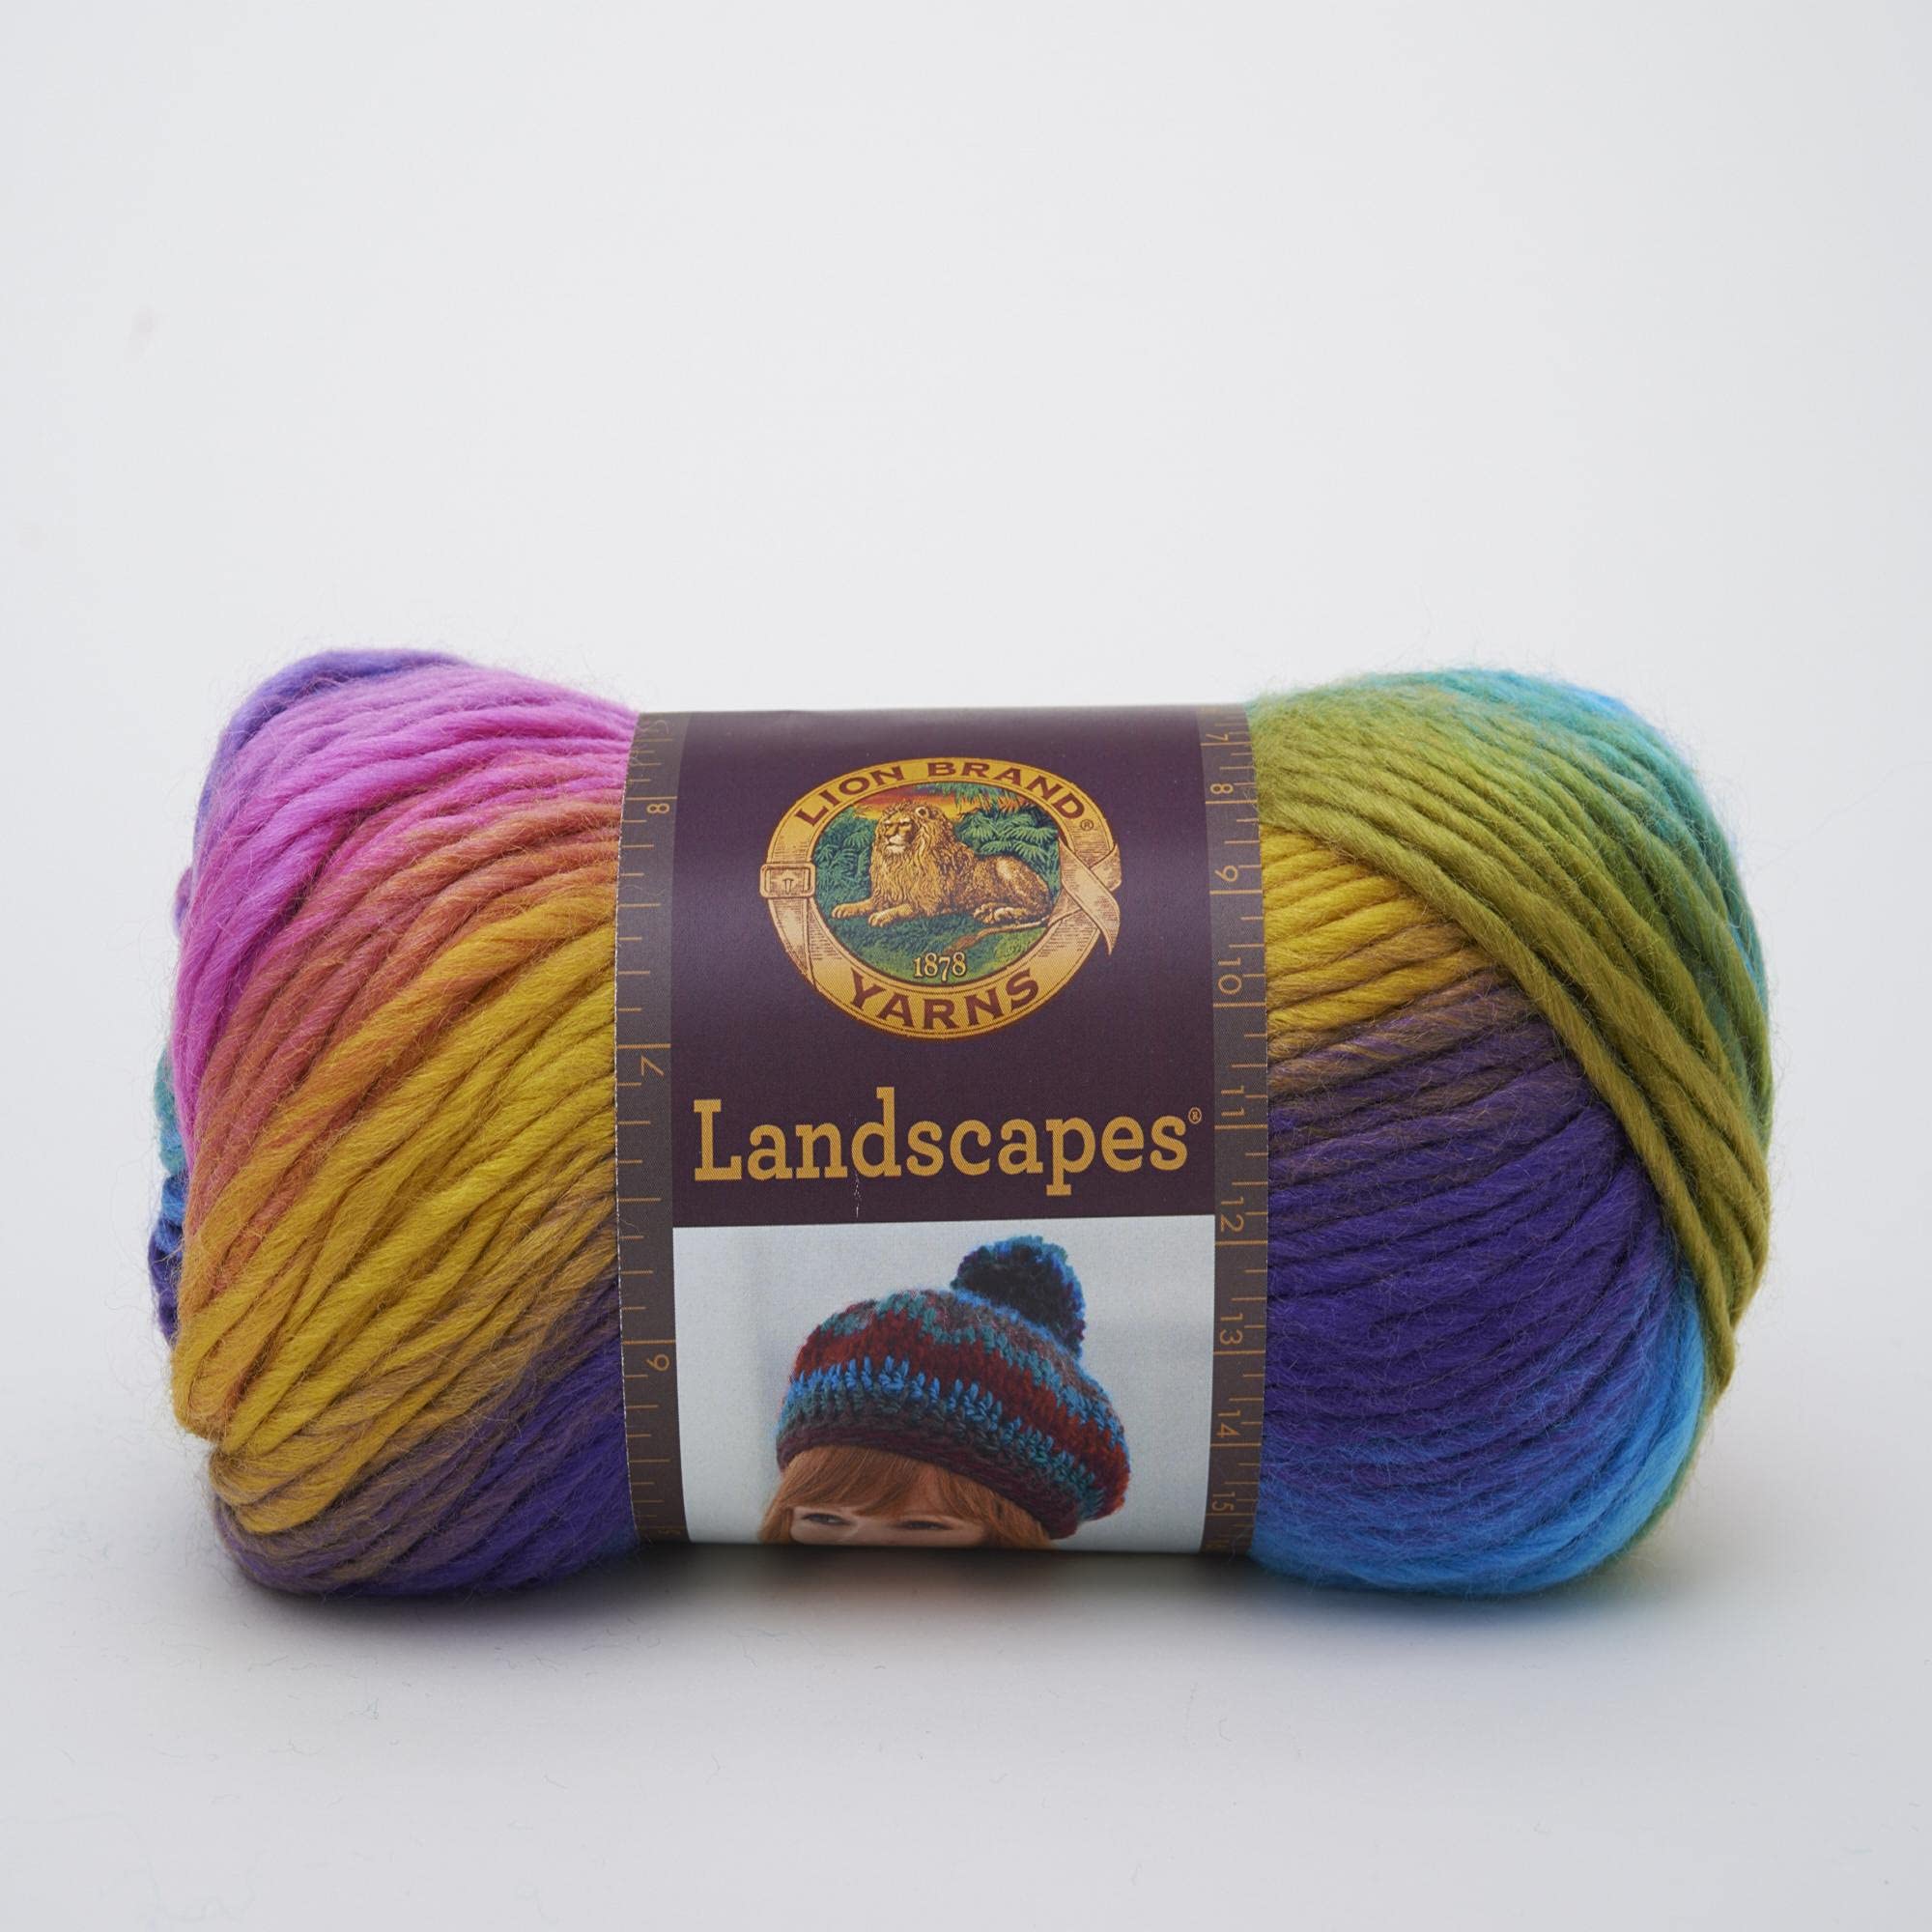 Lion Brand Yarn Landscapes Yarn Multicolor Yarn for Knitting